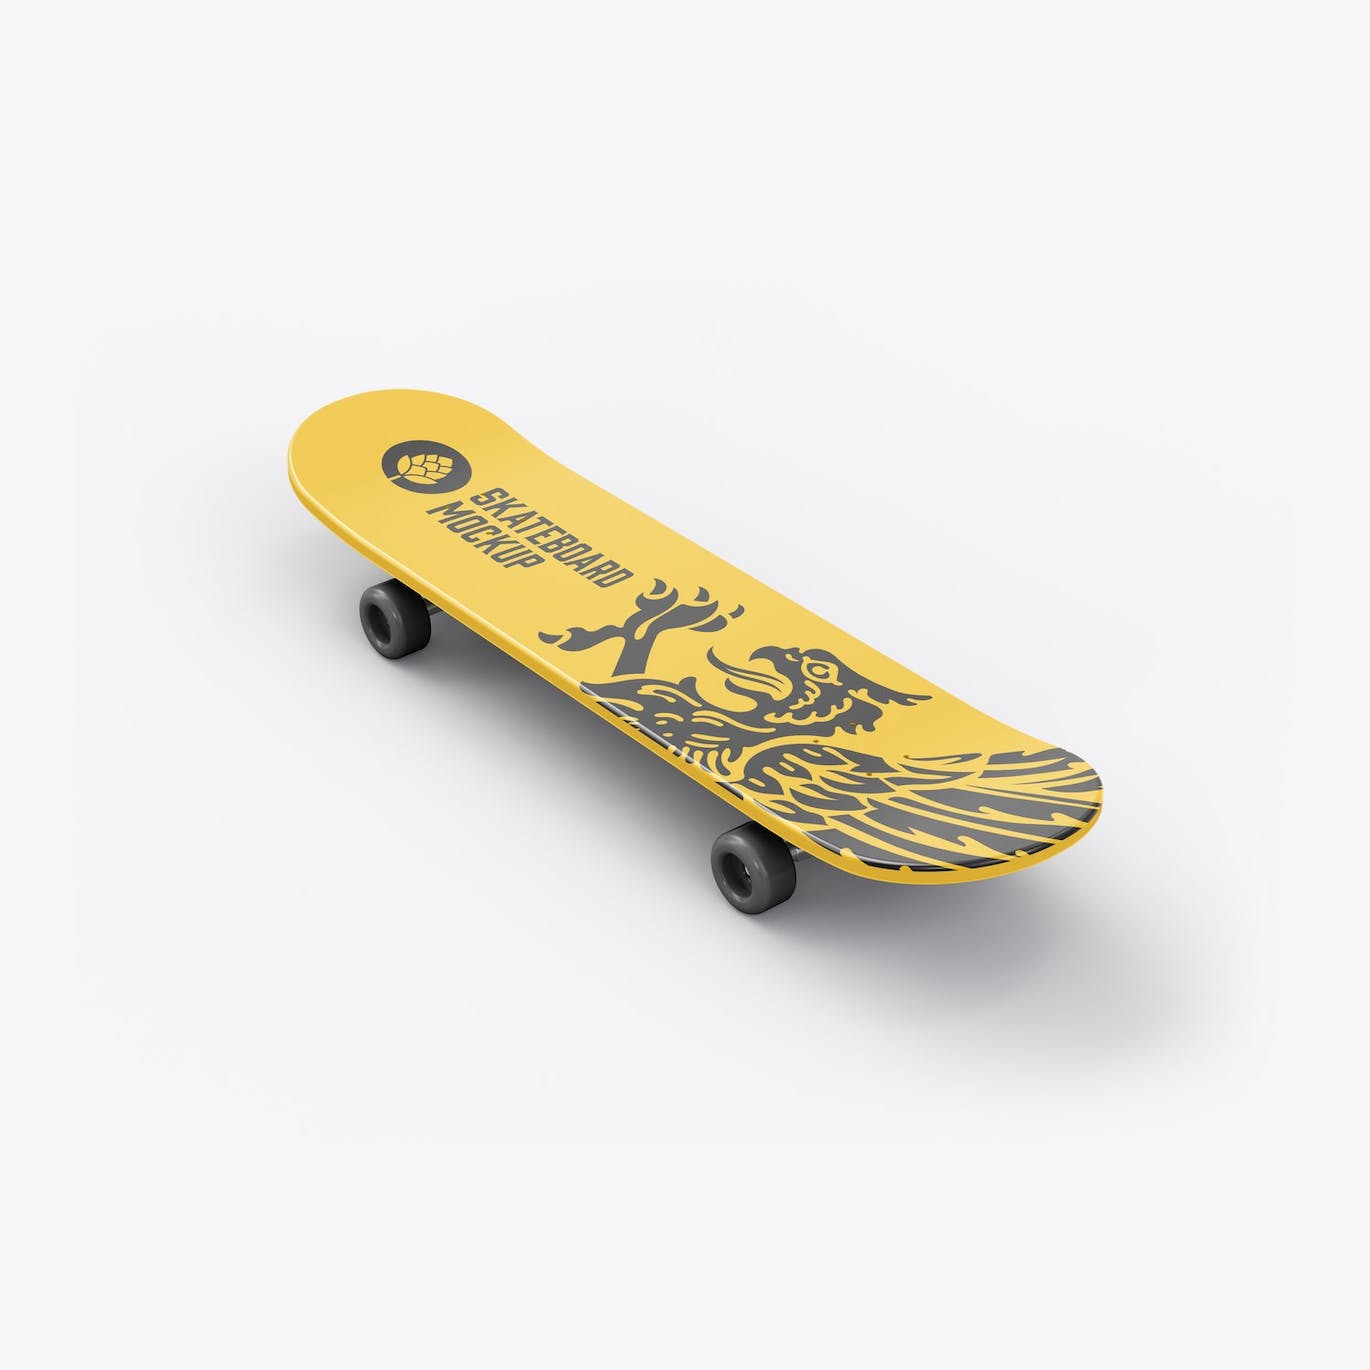 骑行滑板品牌设计样机 Skateboard Mockup 样机素材 第9张